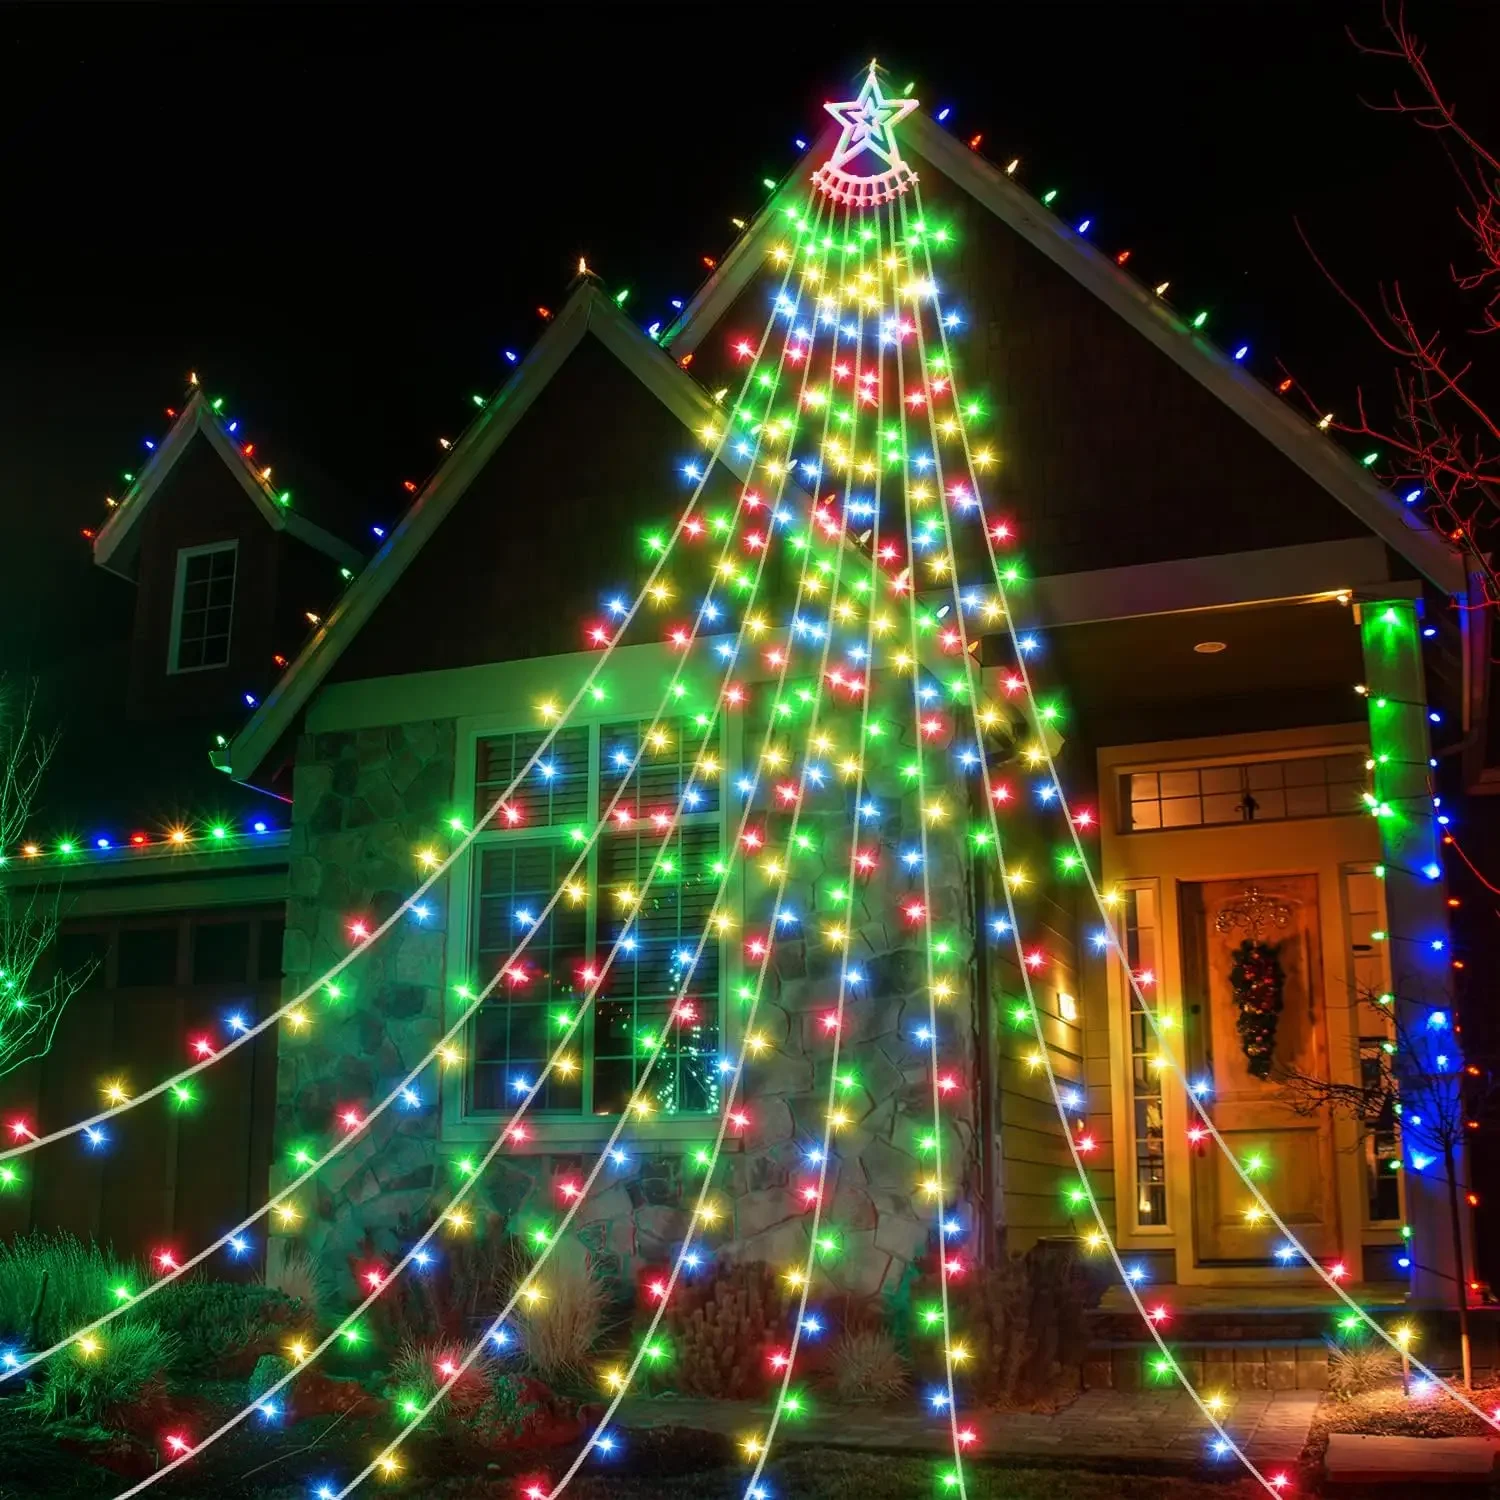 White Ceramic Houses Christmas Decor  Ceramic Christmas Houses Lights -  Christmas - Aliexpress